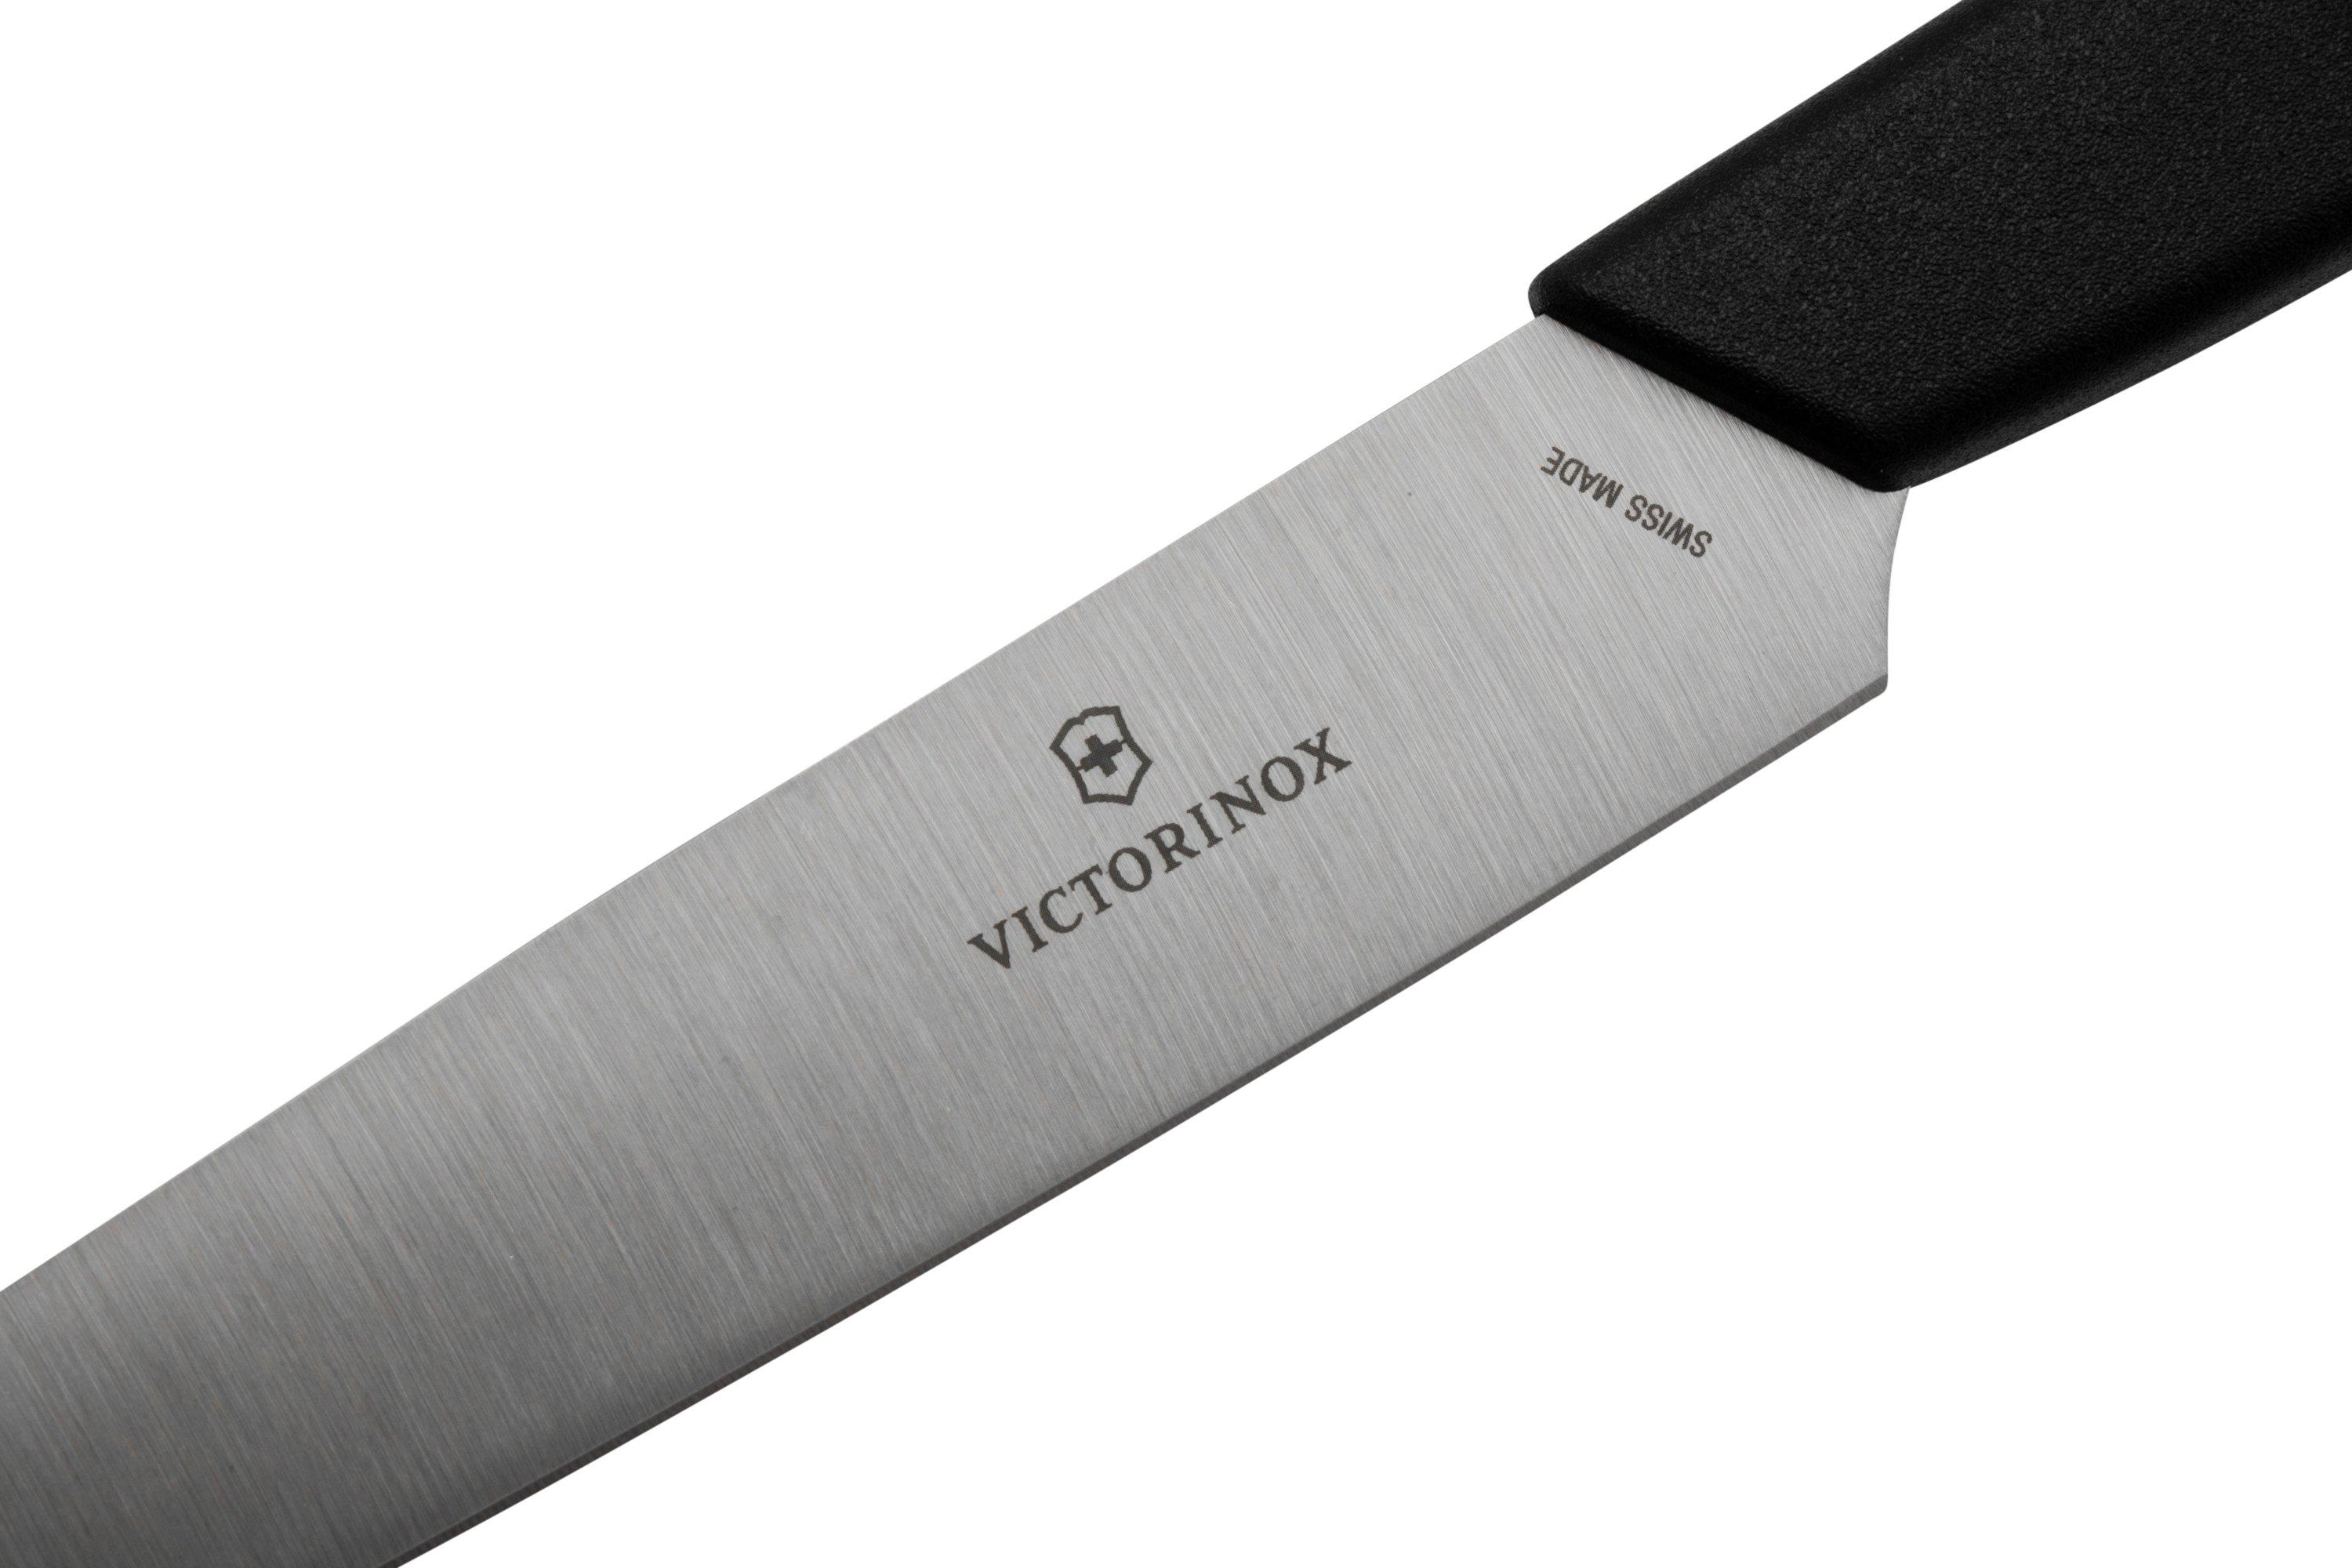 Cuchillo Victorinox 11cms con pelador 6.7116.21L12